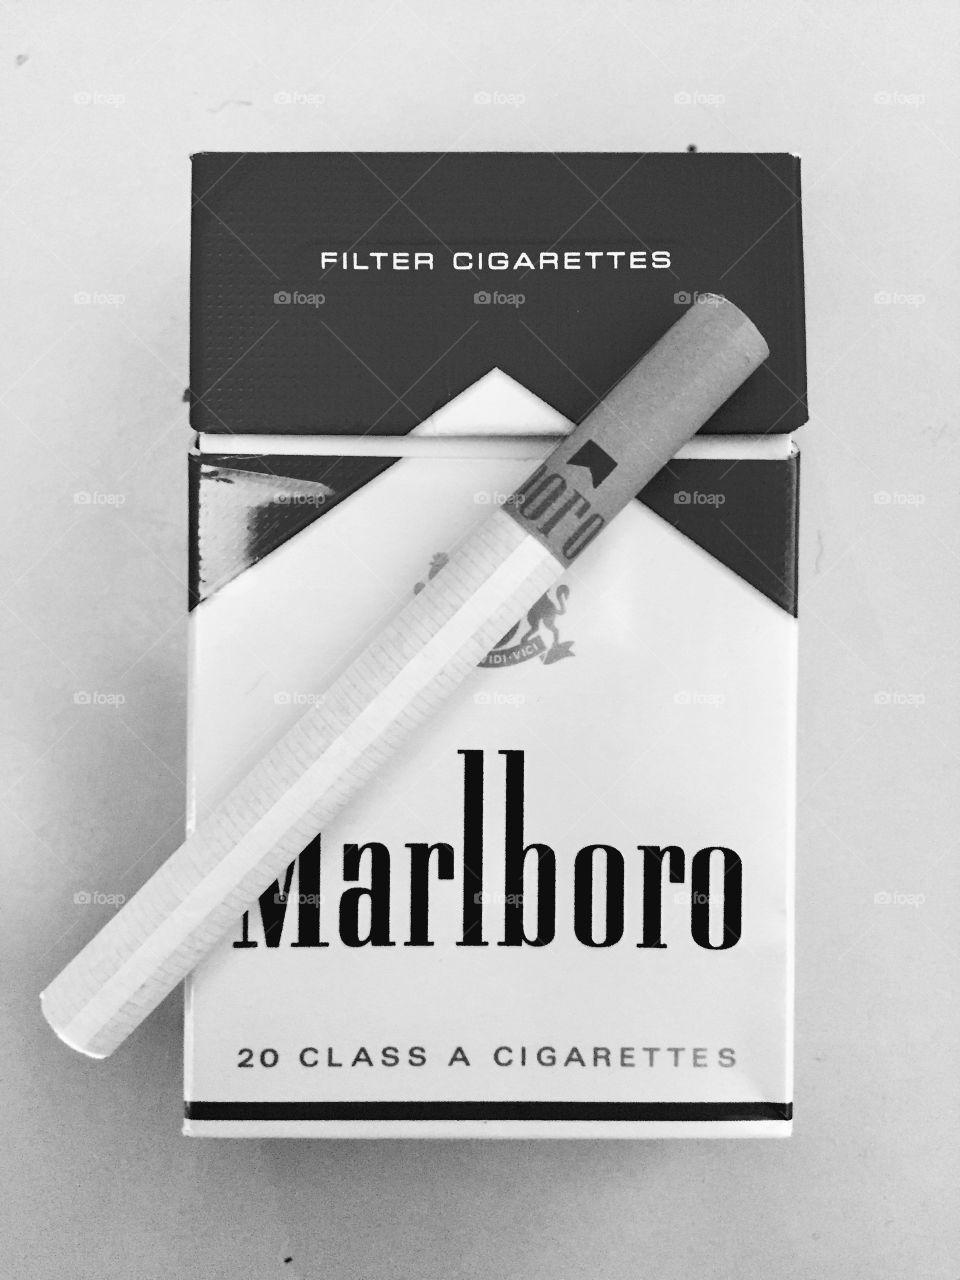 Marlboro
Cigarettes

